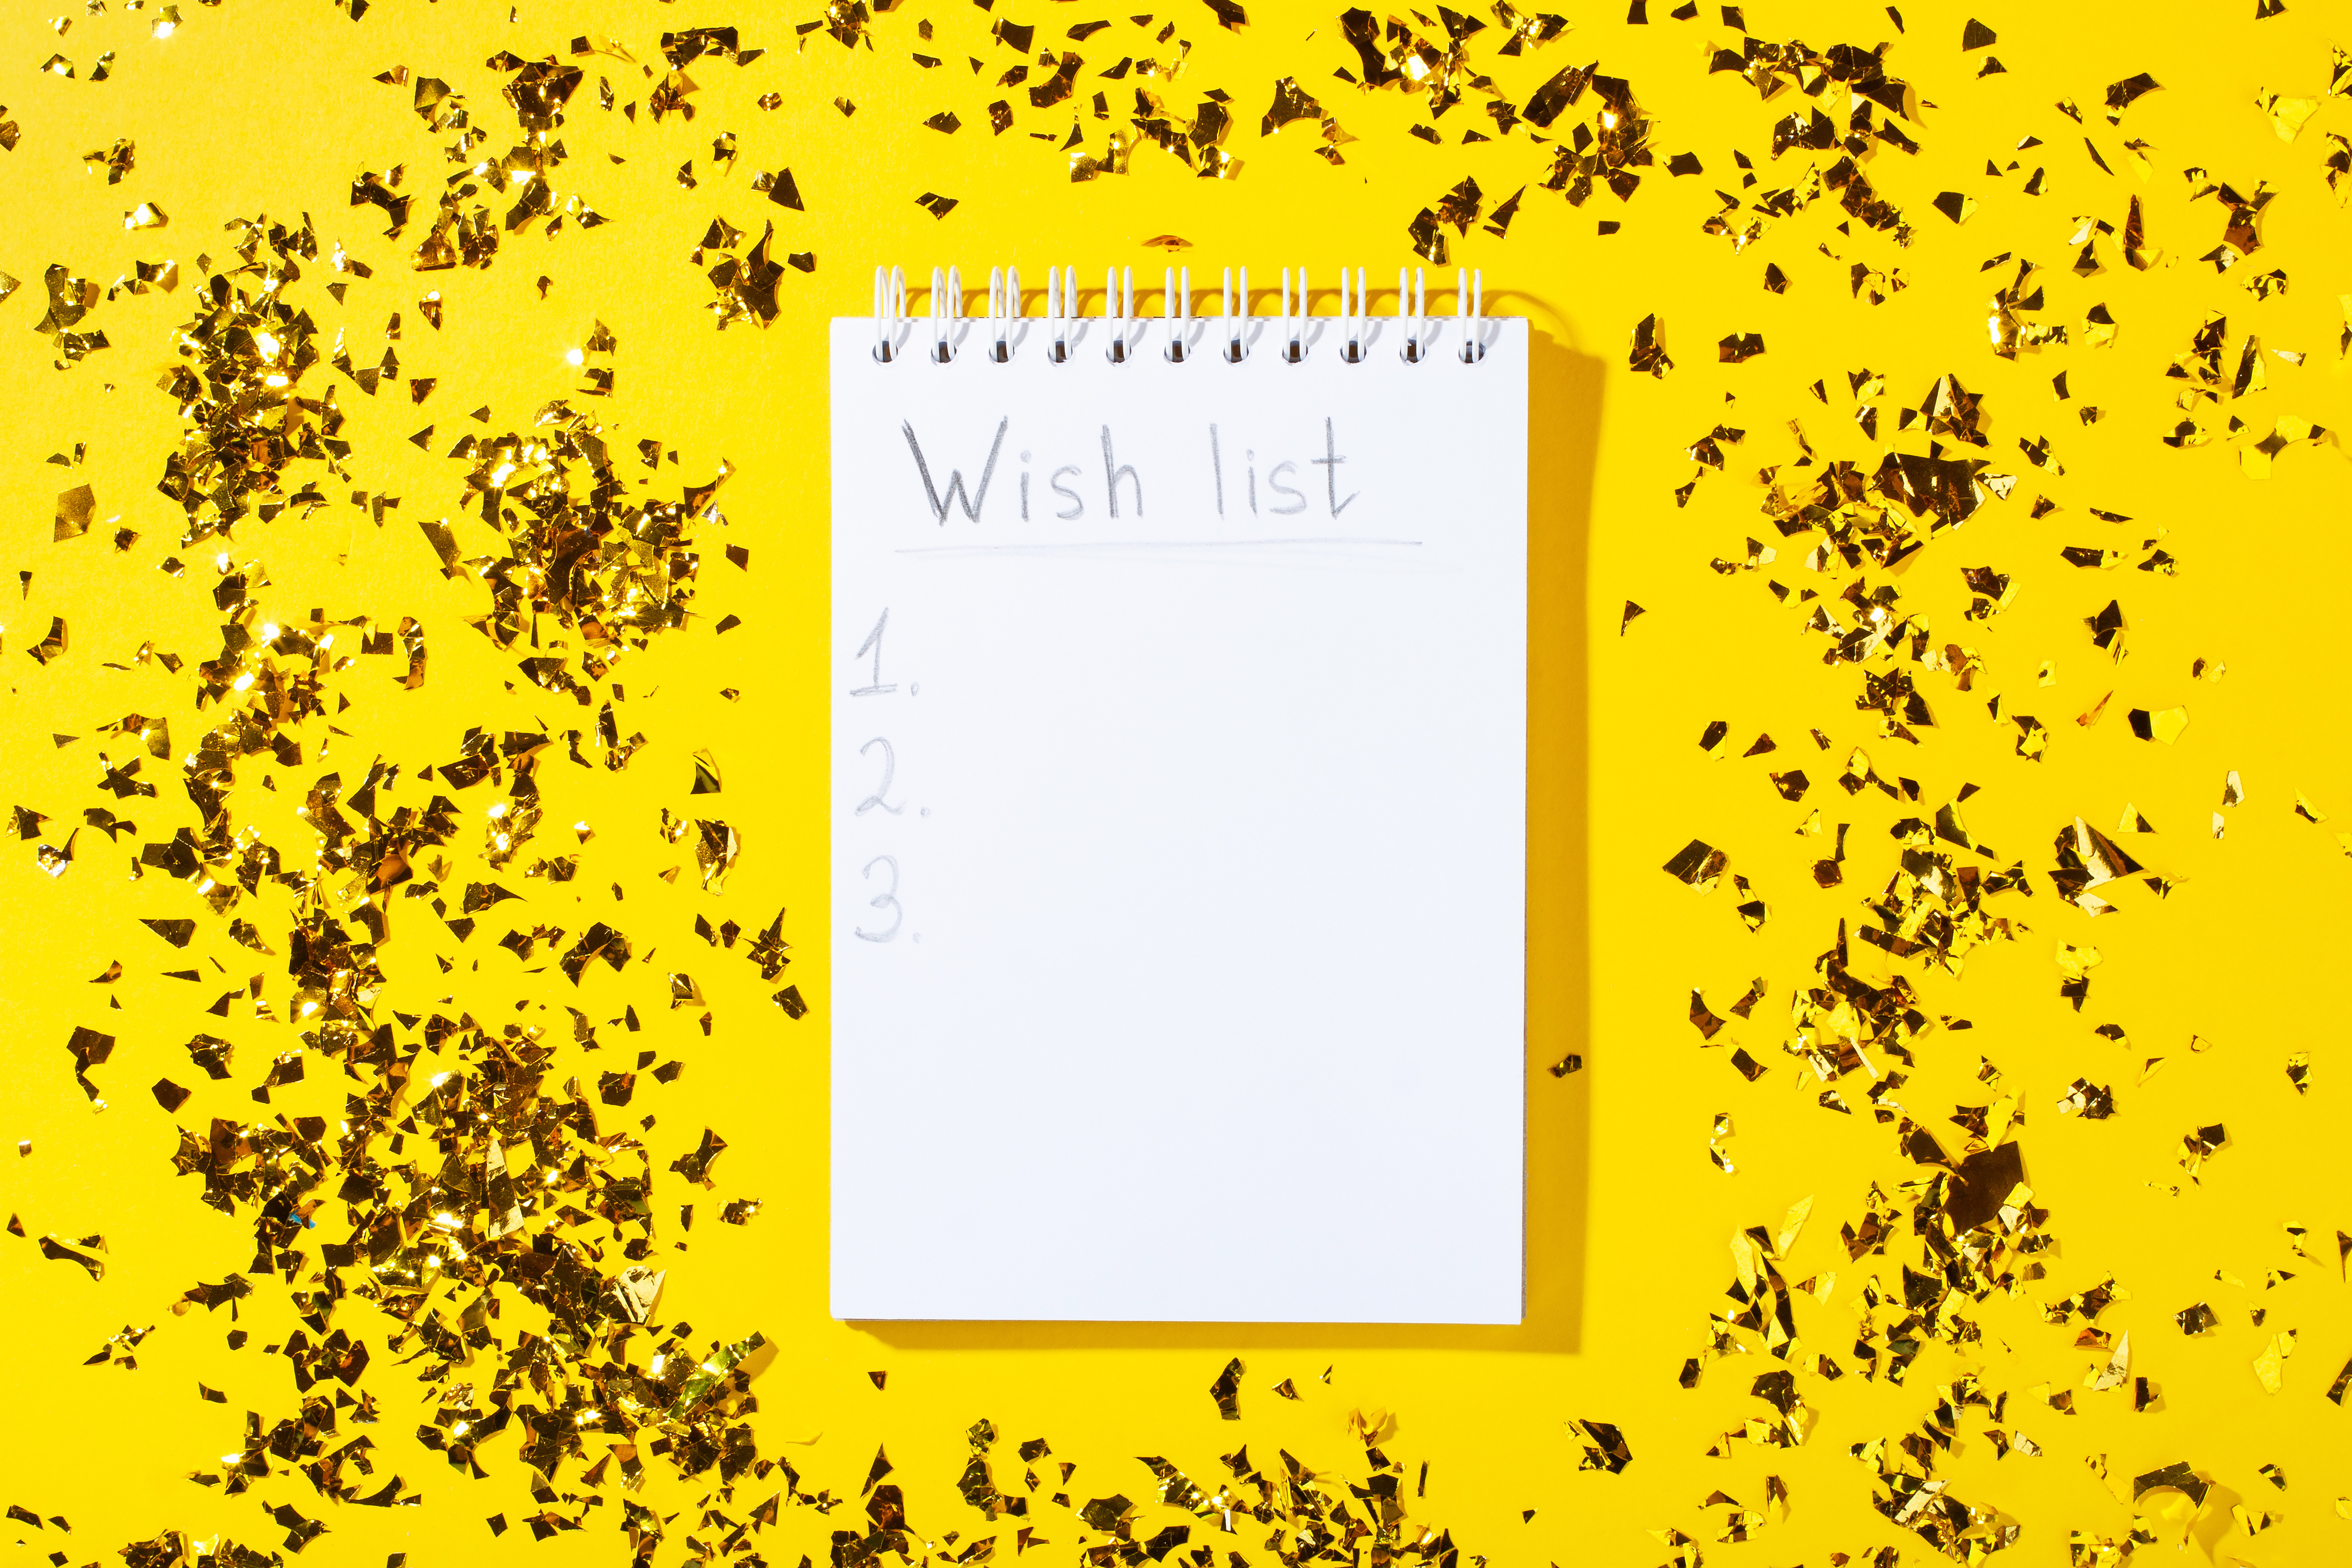 wish list written in a notebook